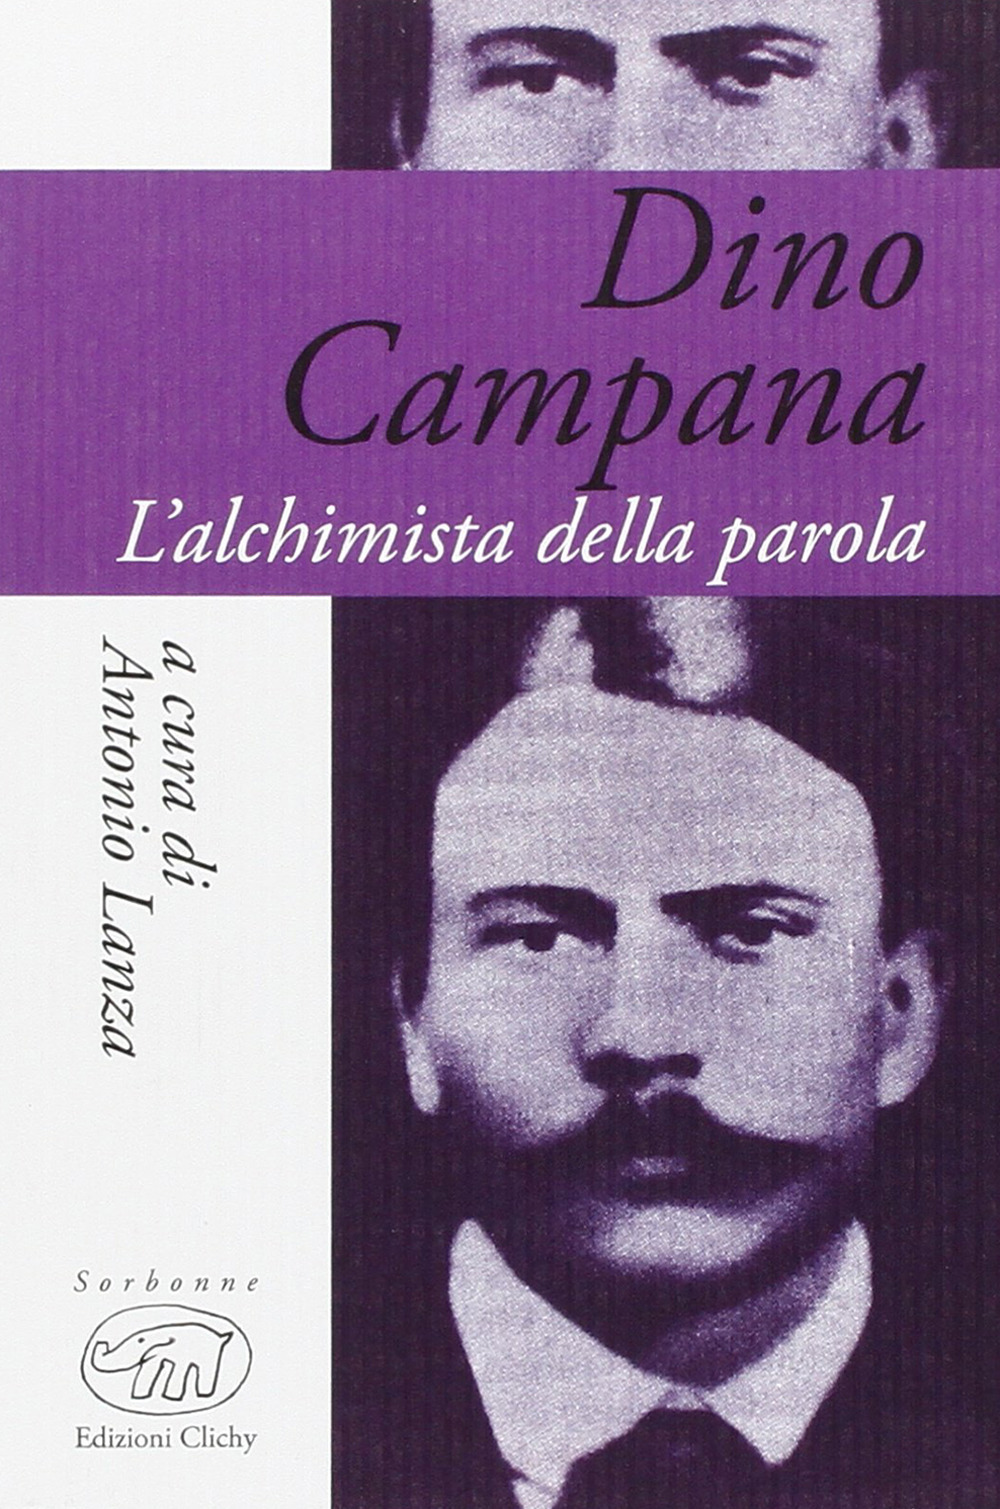 Dino Campana. L'alchimista della parola